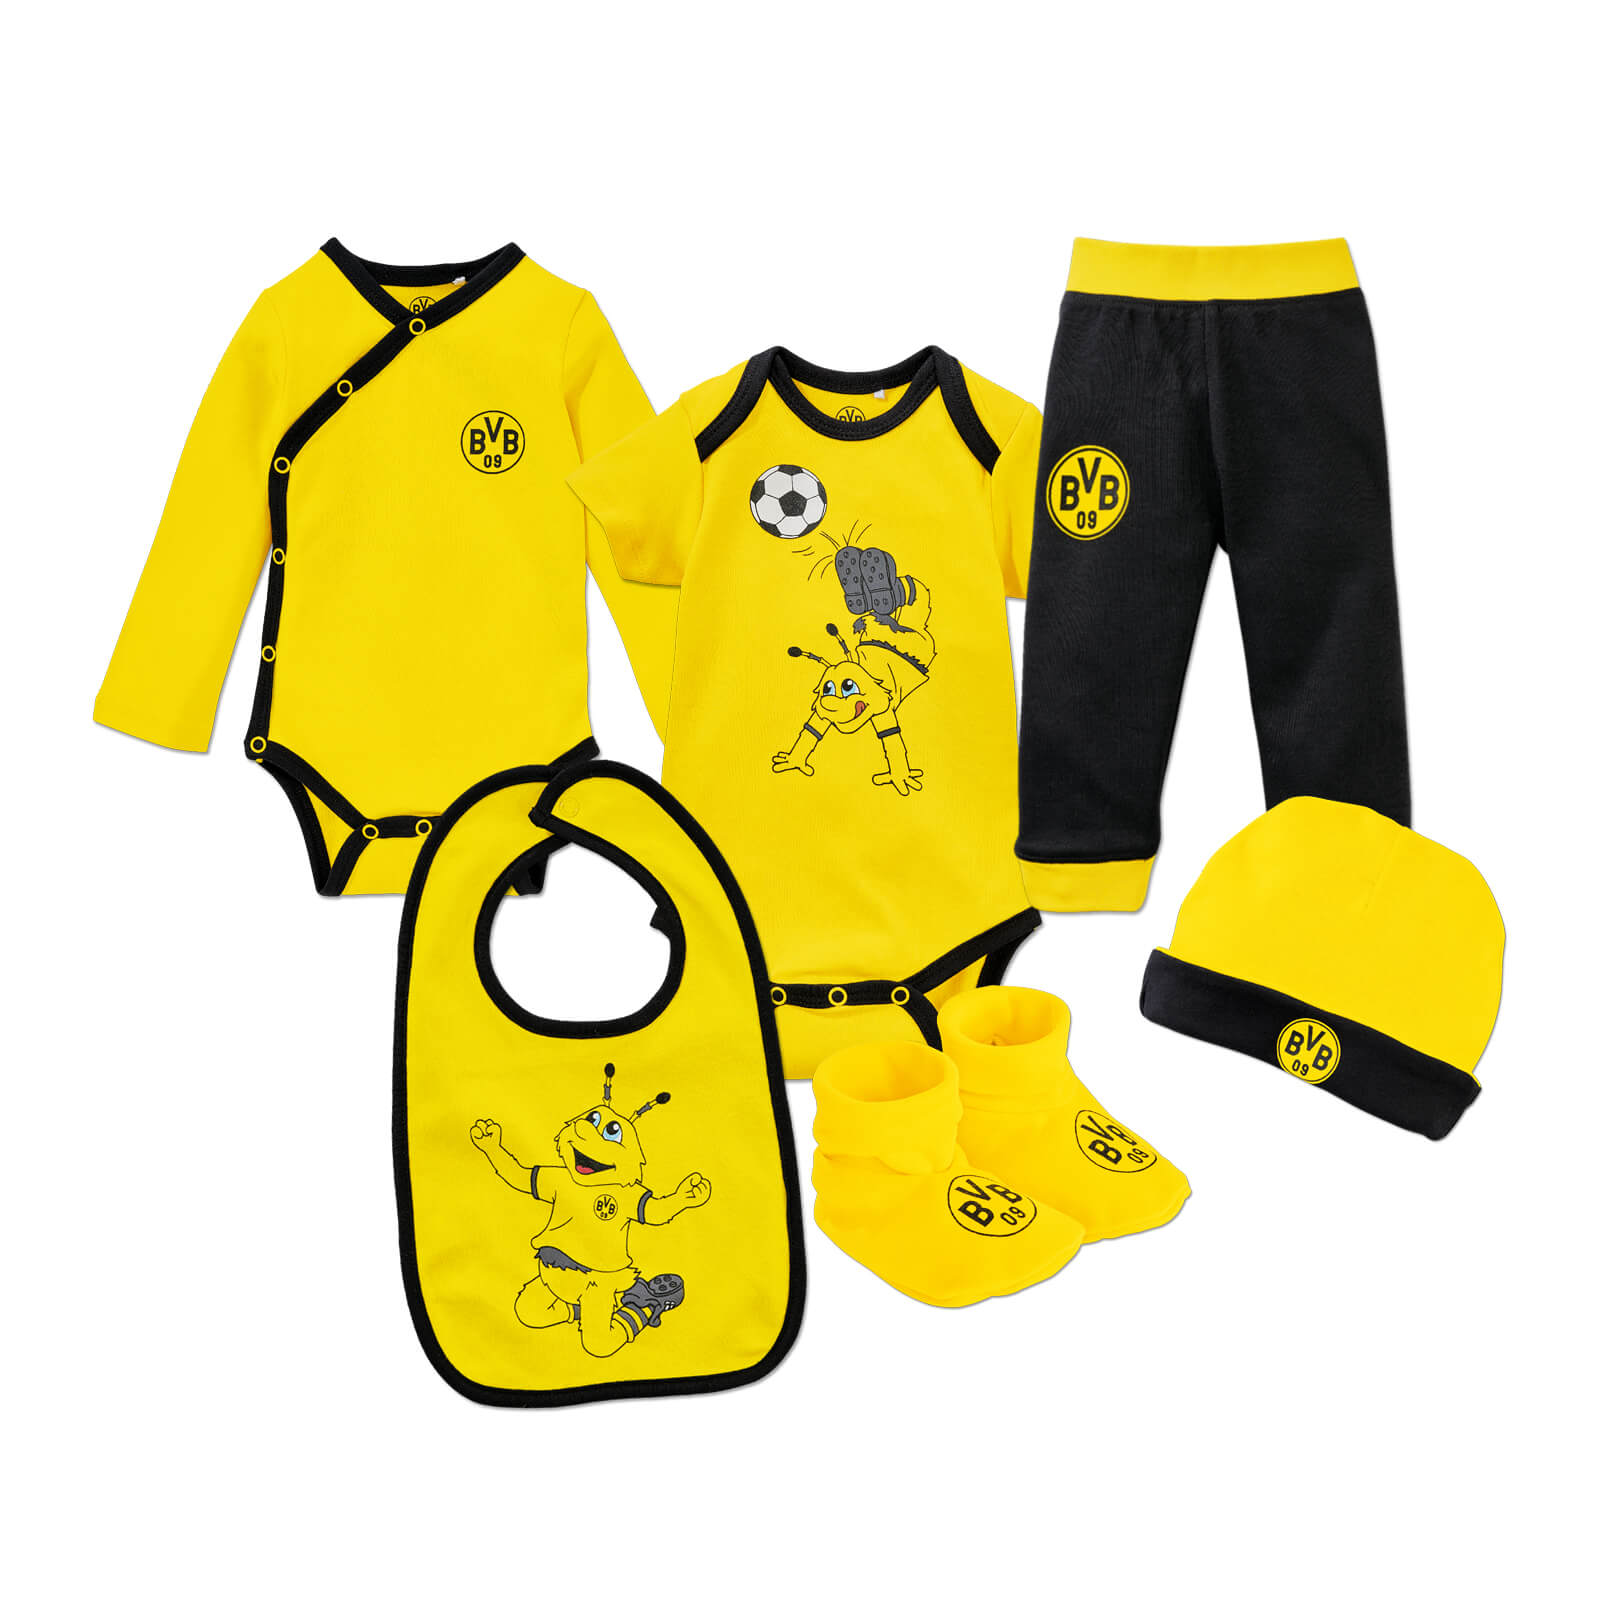 Borussia Dortmund BVB Juego de Palillos de Dientes Color Negro y Amarillo Madera, 6 x 6 x 5 cm, 200 Unidades 